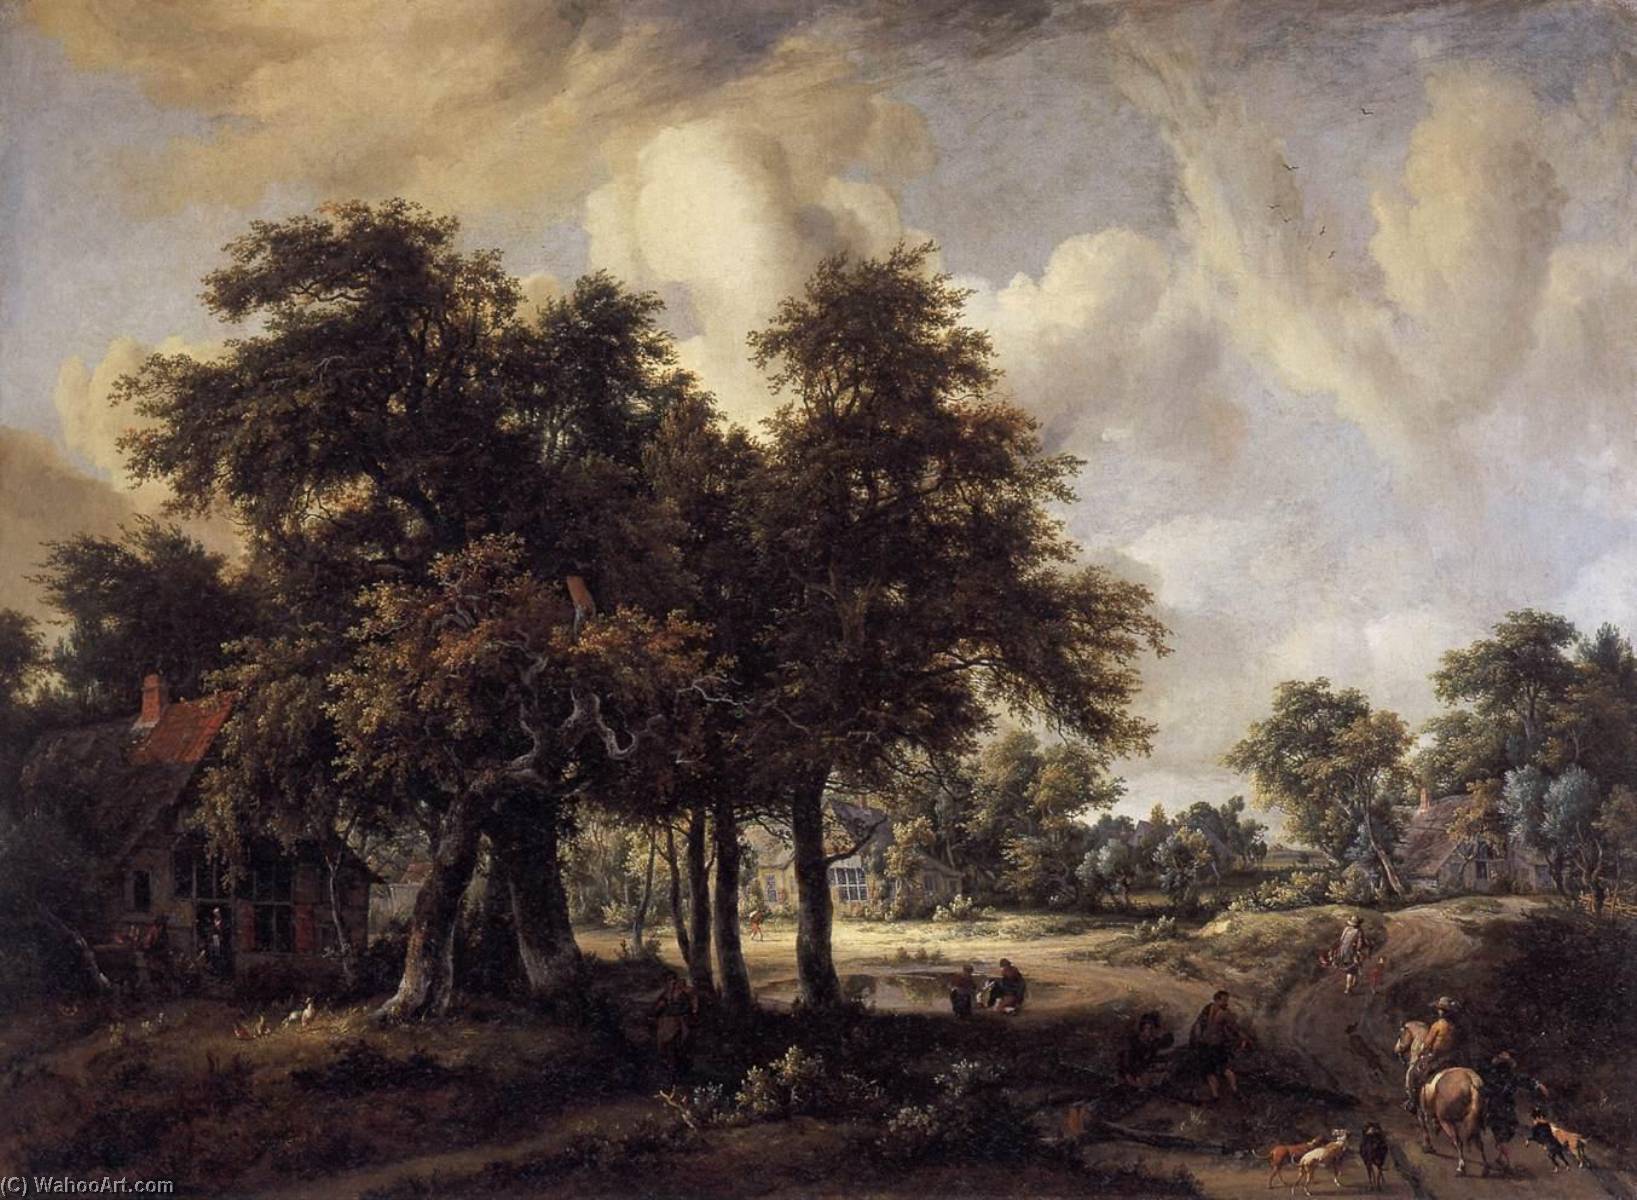 WikiOO.org - אנציקלופדיה לאמנויות יפות - ציור, יצירות אמנות Meyndert Hobbema - Wooded Landscape with Cottages